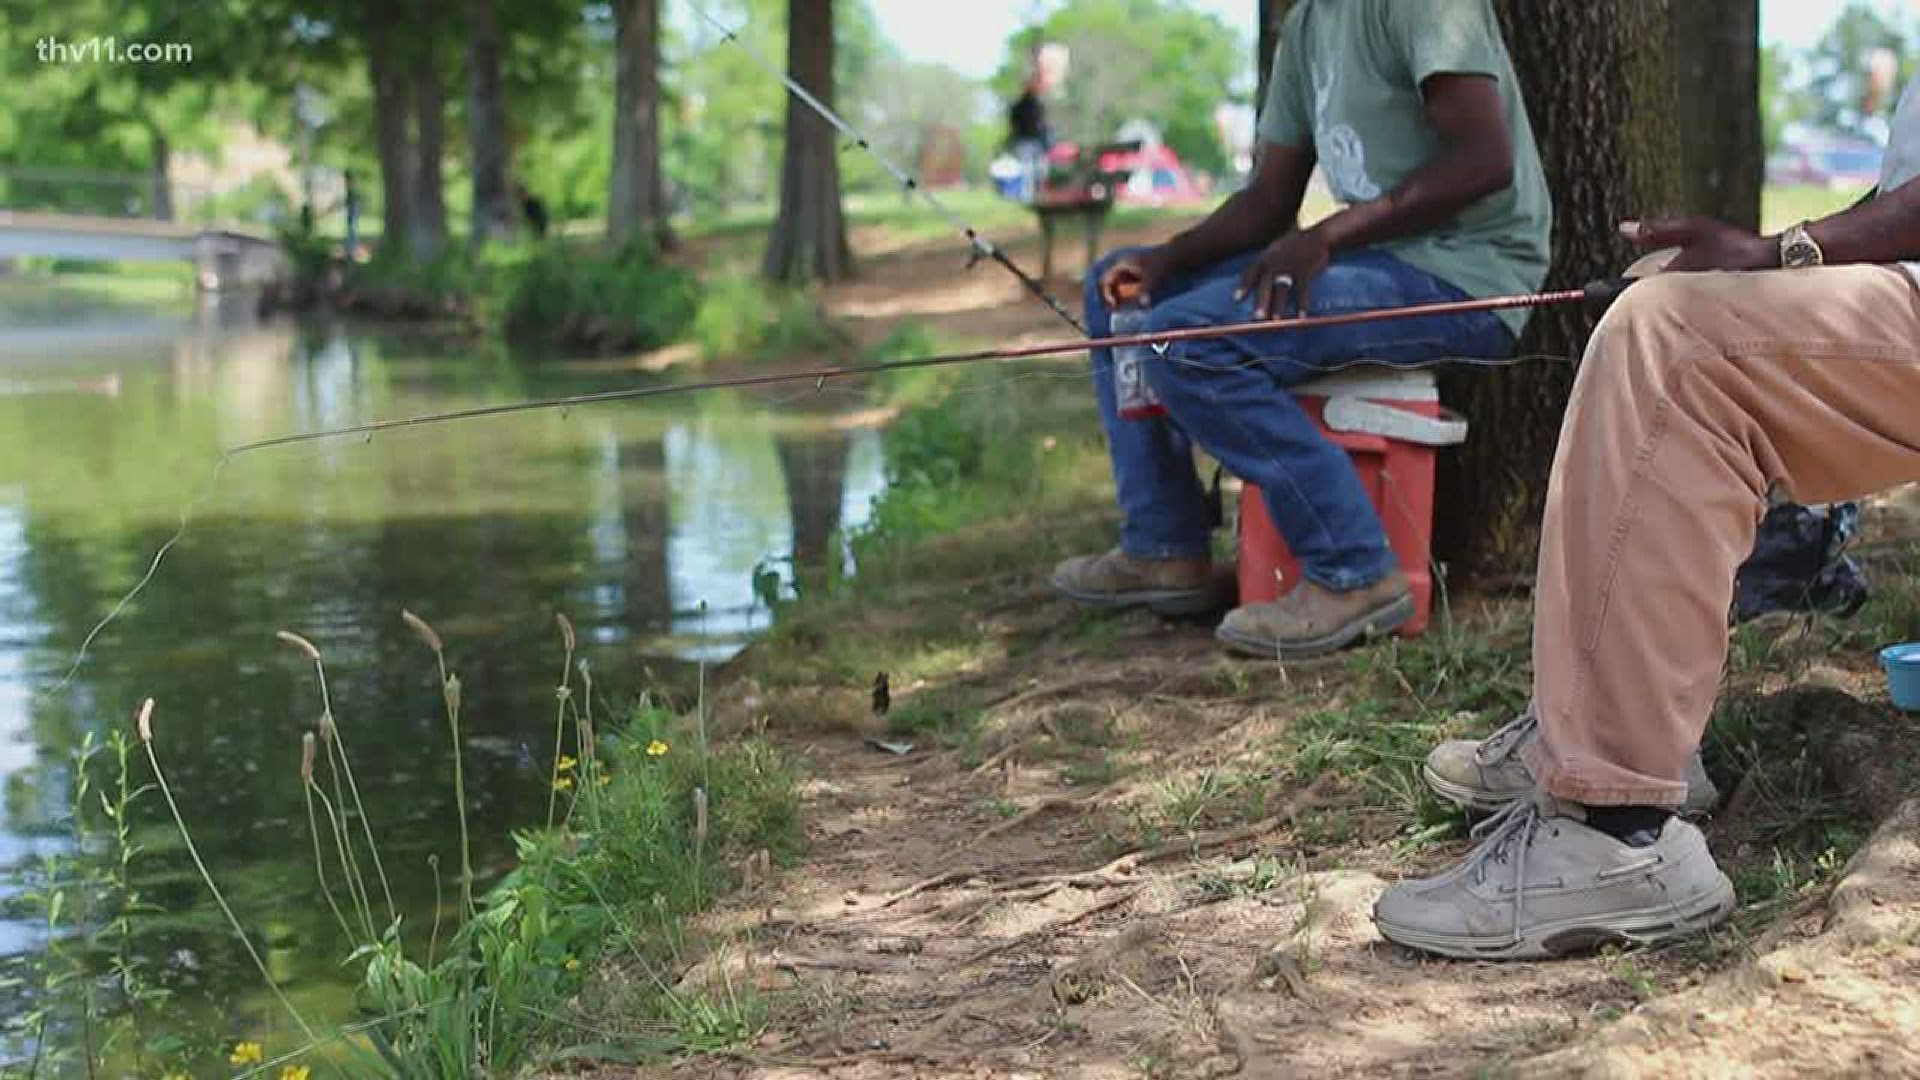 June 1214 is Free Fishing Weekend in Arkansas!